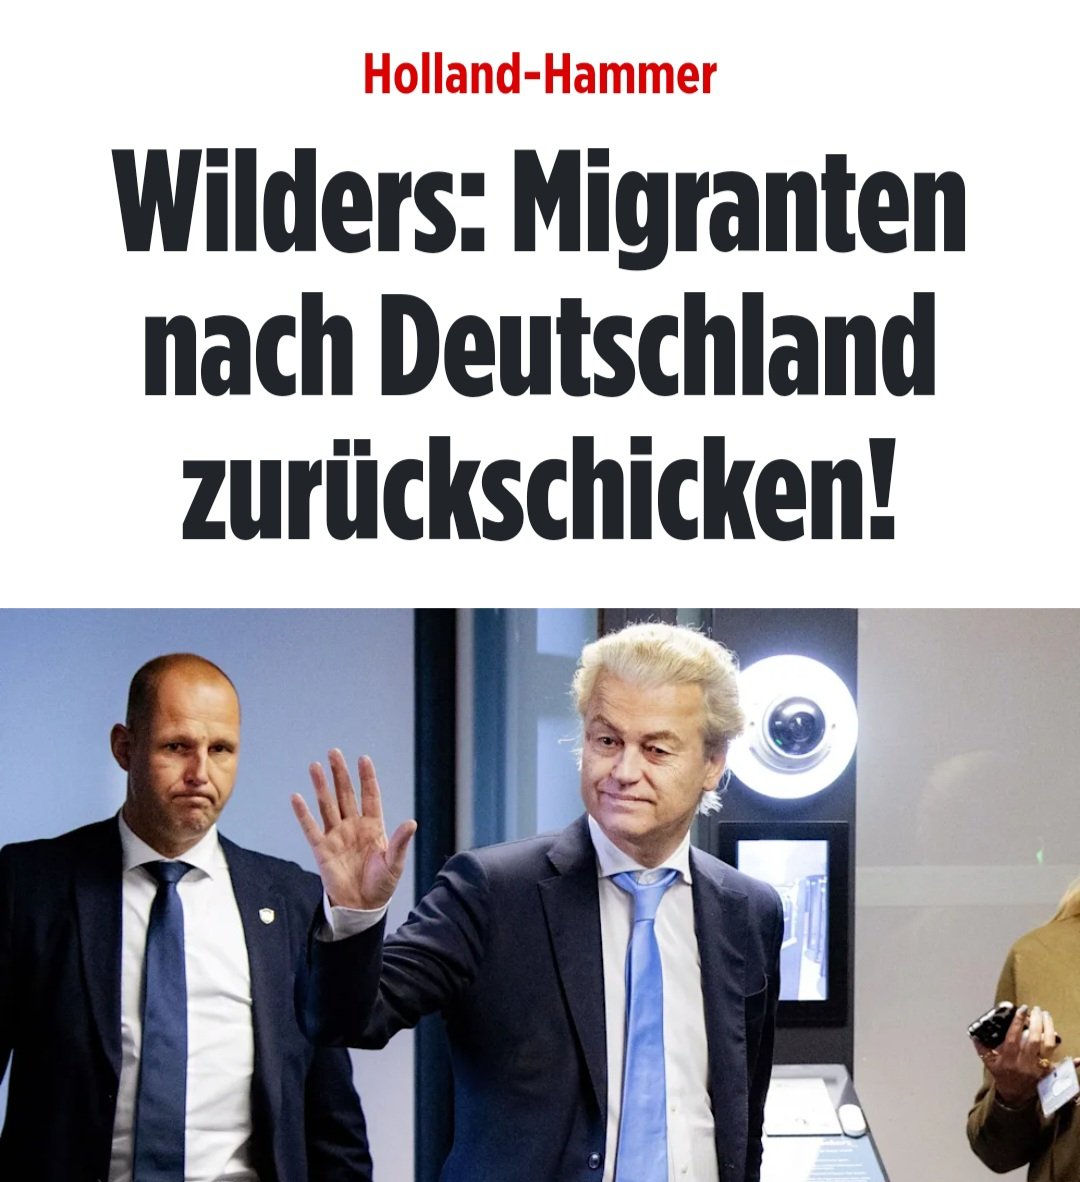 Ach, was soll's.
Wir haben doch Platz ohne Ende.
Wir schaffen das. 
Nicht. 
#Wilders #Migranten 

m.bild.de/politik/auslan…